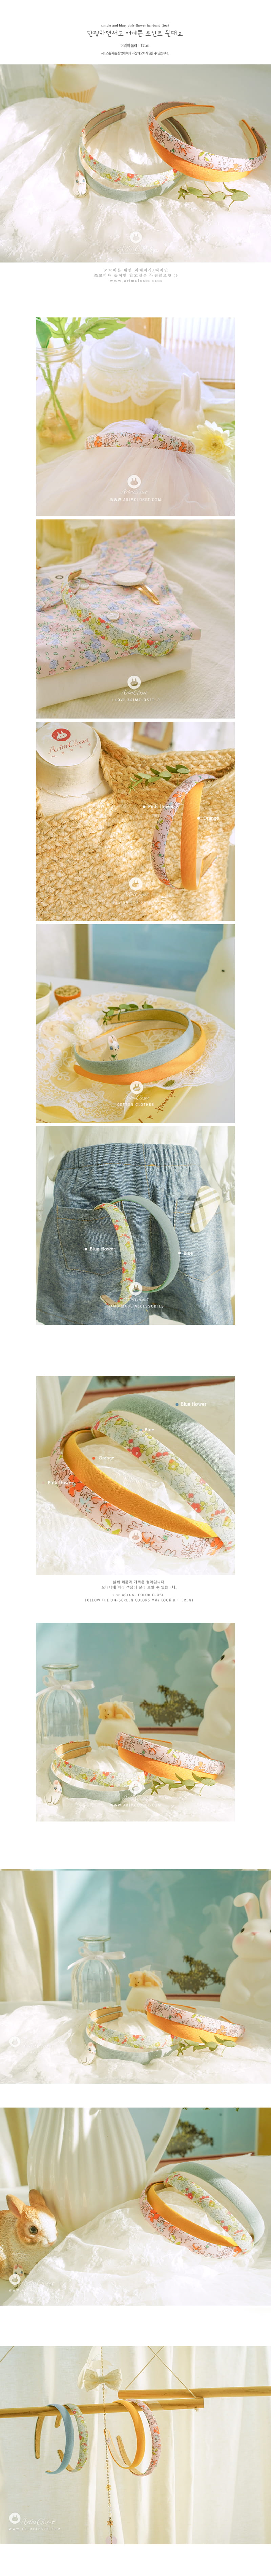 Arim Closet - Korean Baby Fashion - #onlinebabyshop - Flower Hairband - 2